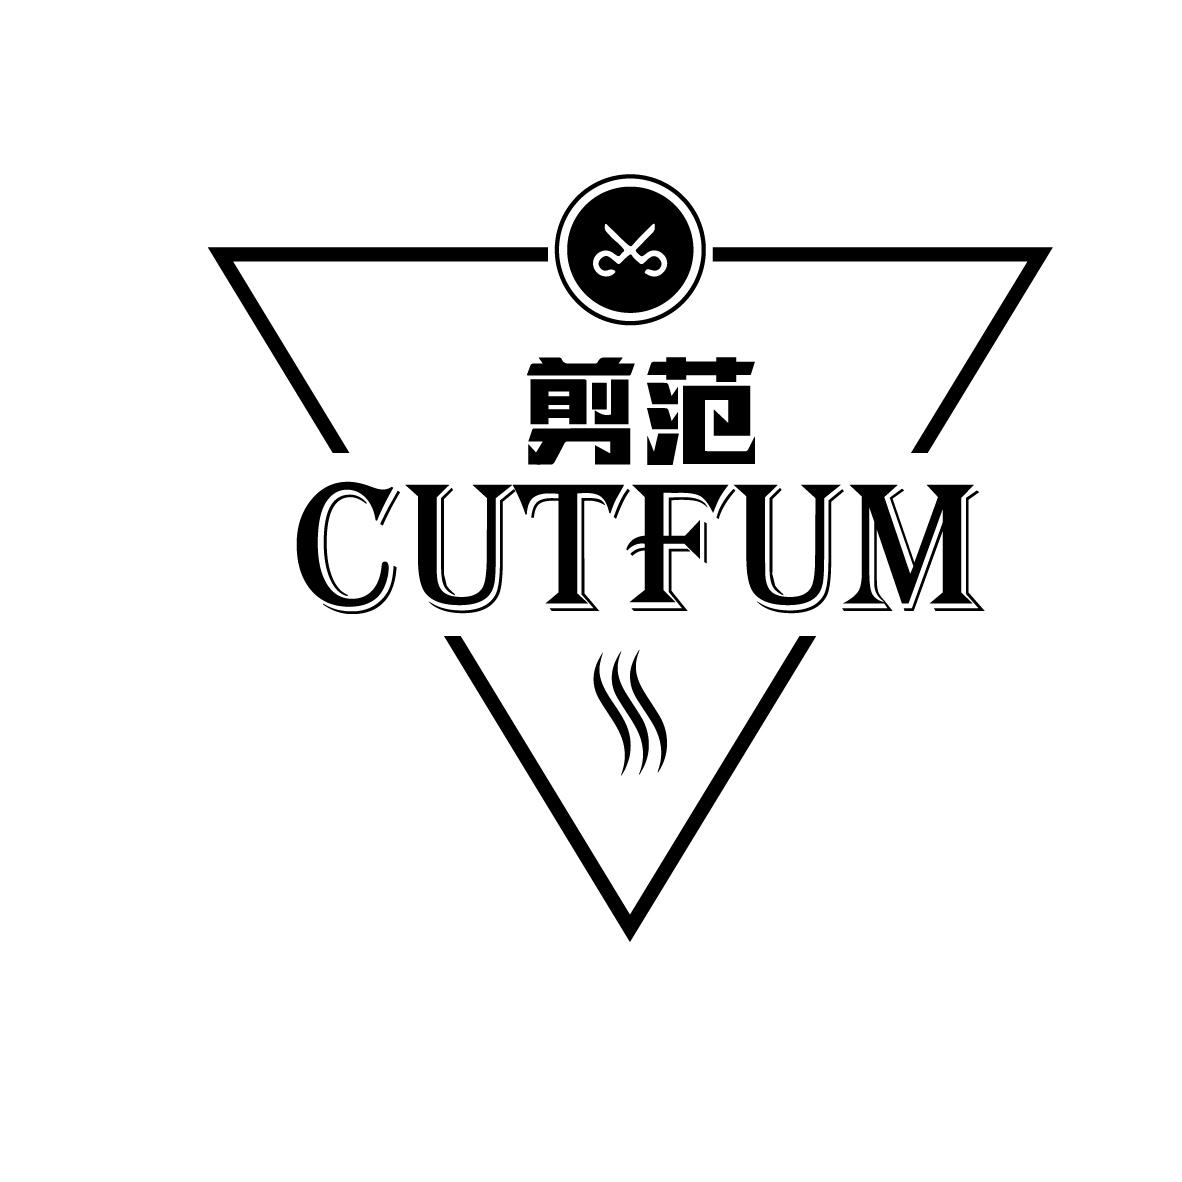  CUTFUM